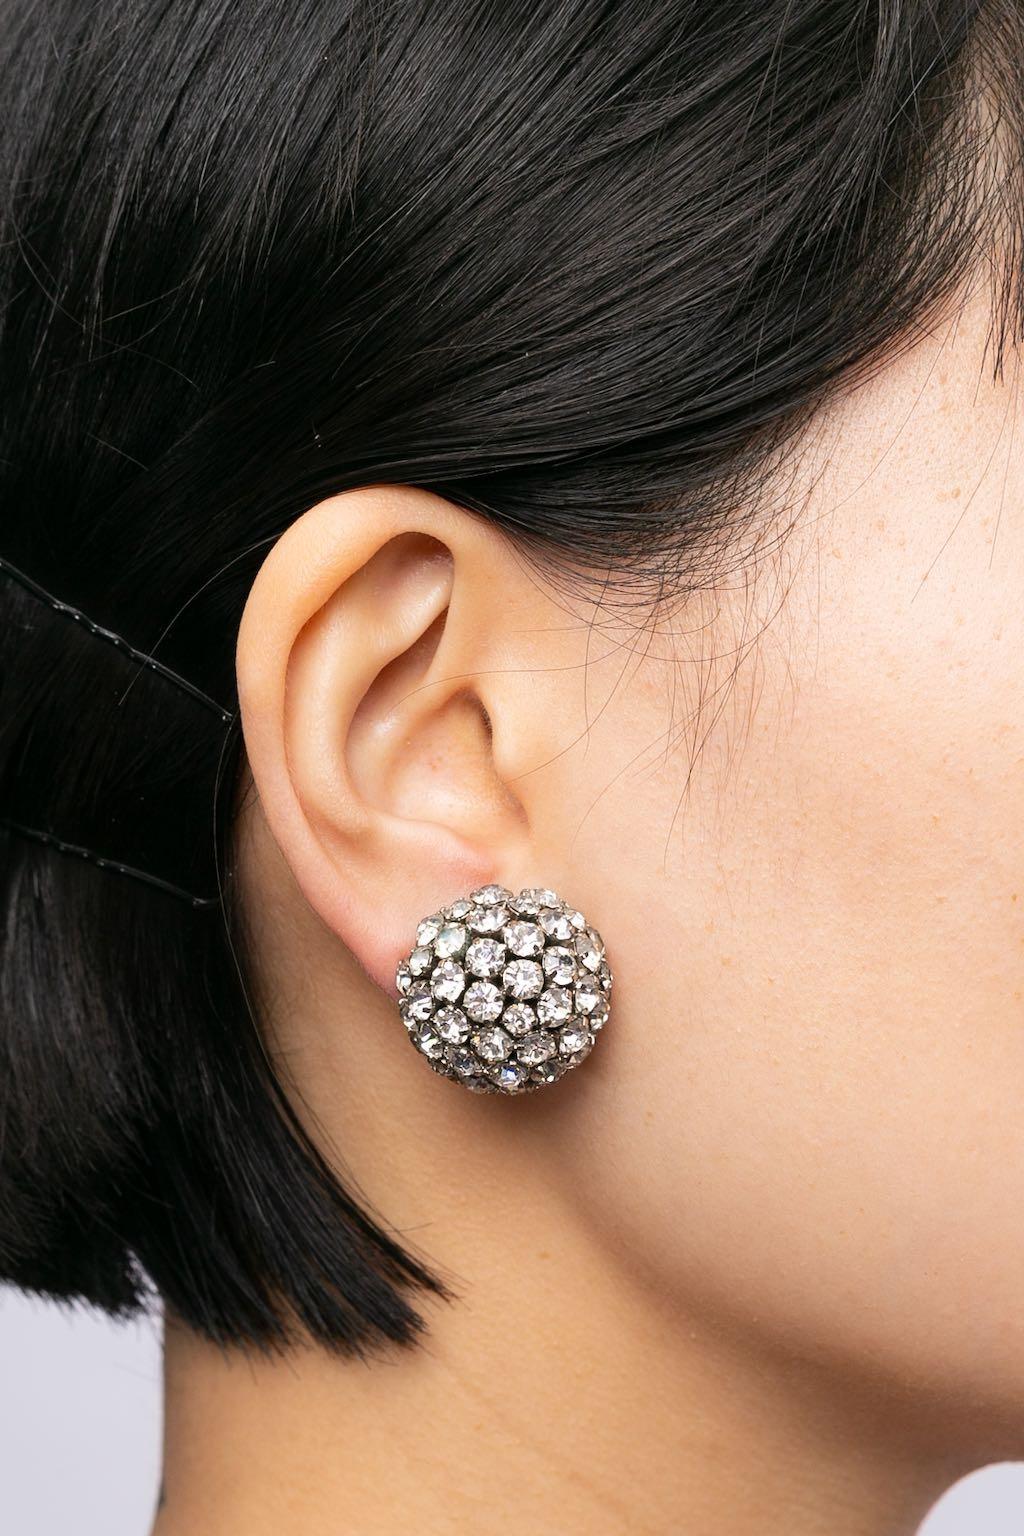 Ohrringe aus silbernem Metall mit Strasssteinen besetzt.

Zusätzliche Informationen:
Zustand: Sehr guter Zustand
Abmessungen: Durchmesser: 2,5 cm (0,98